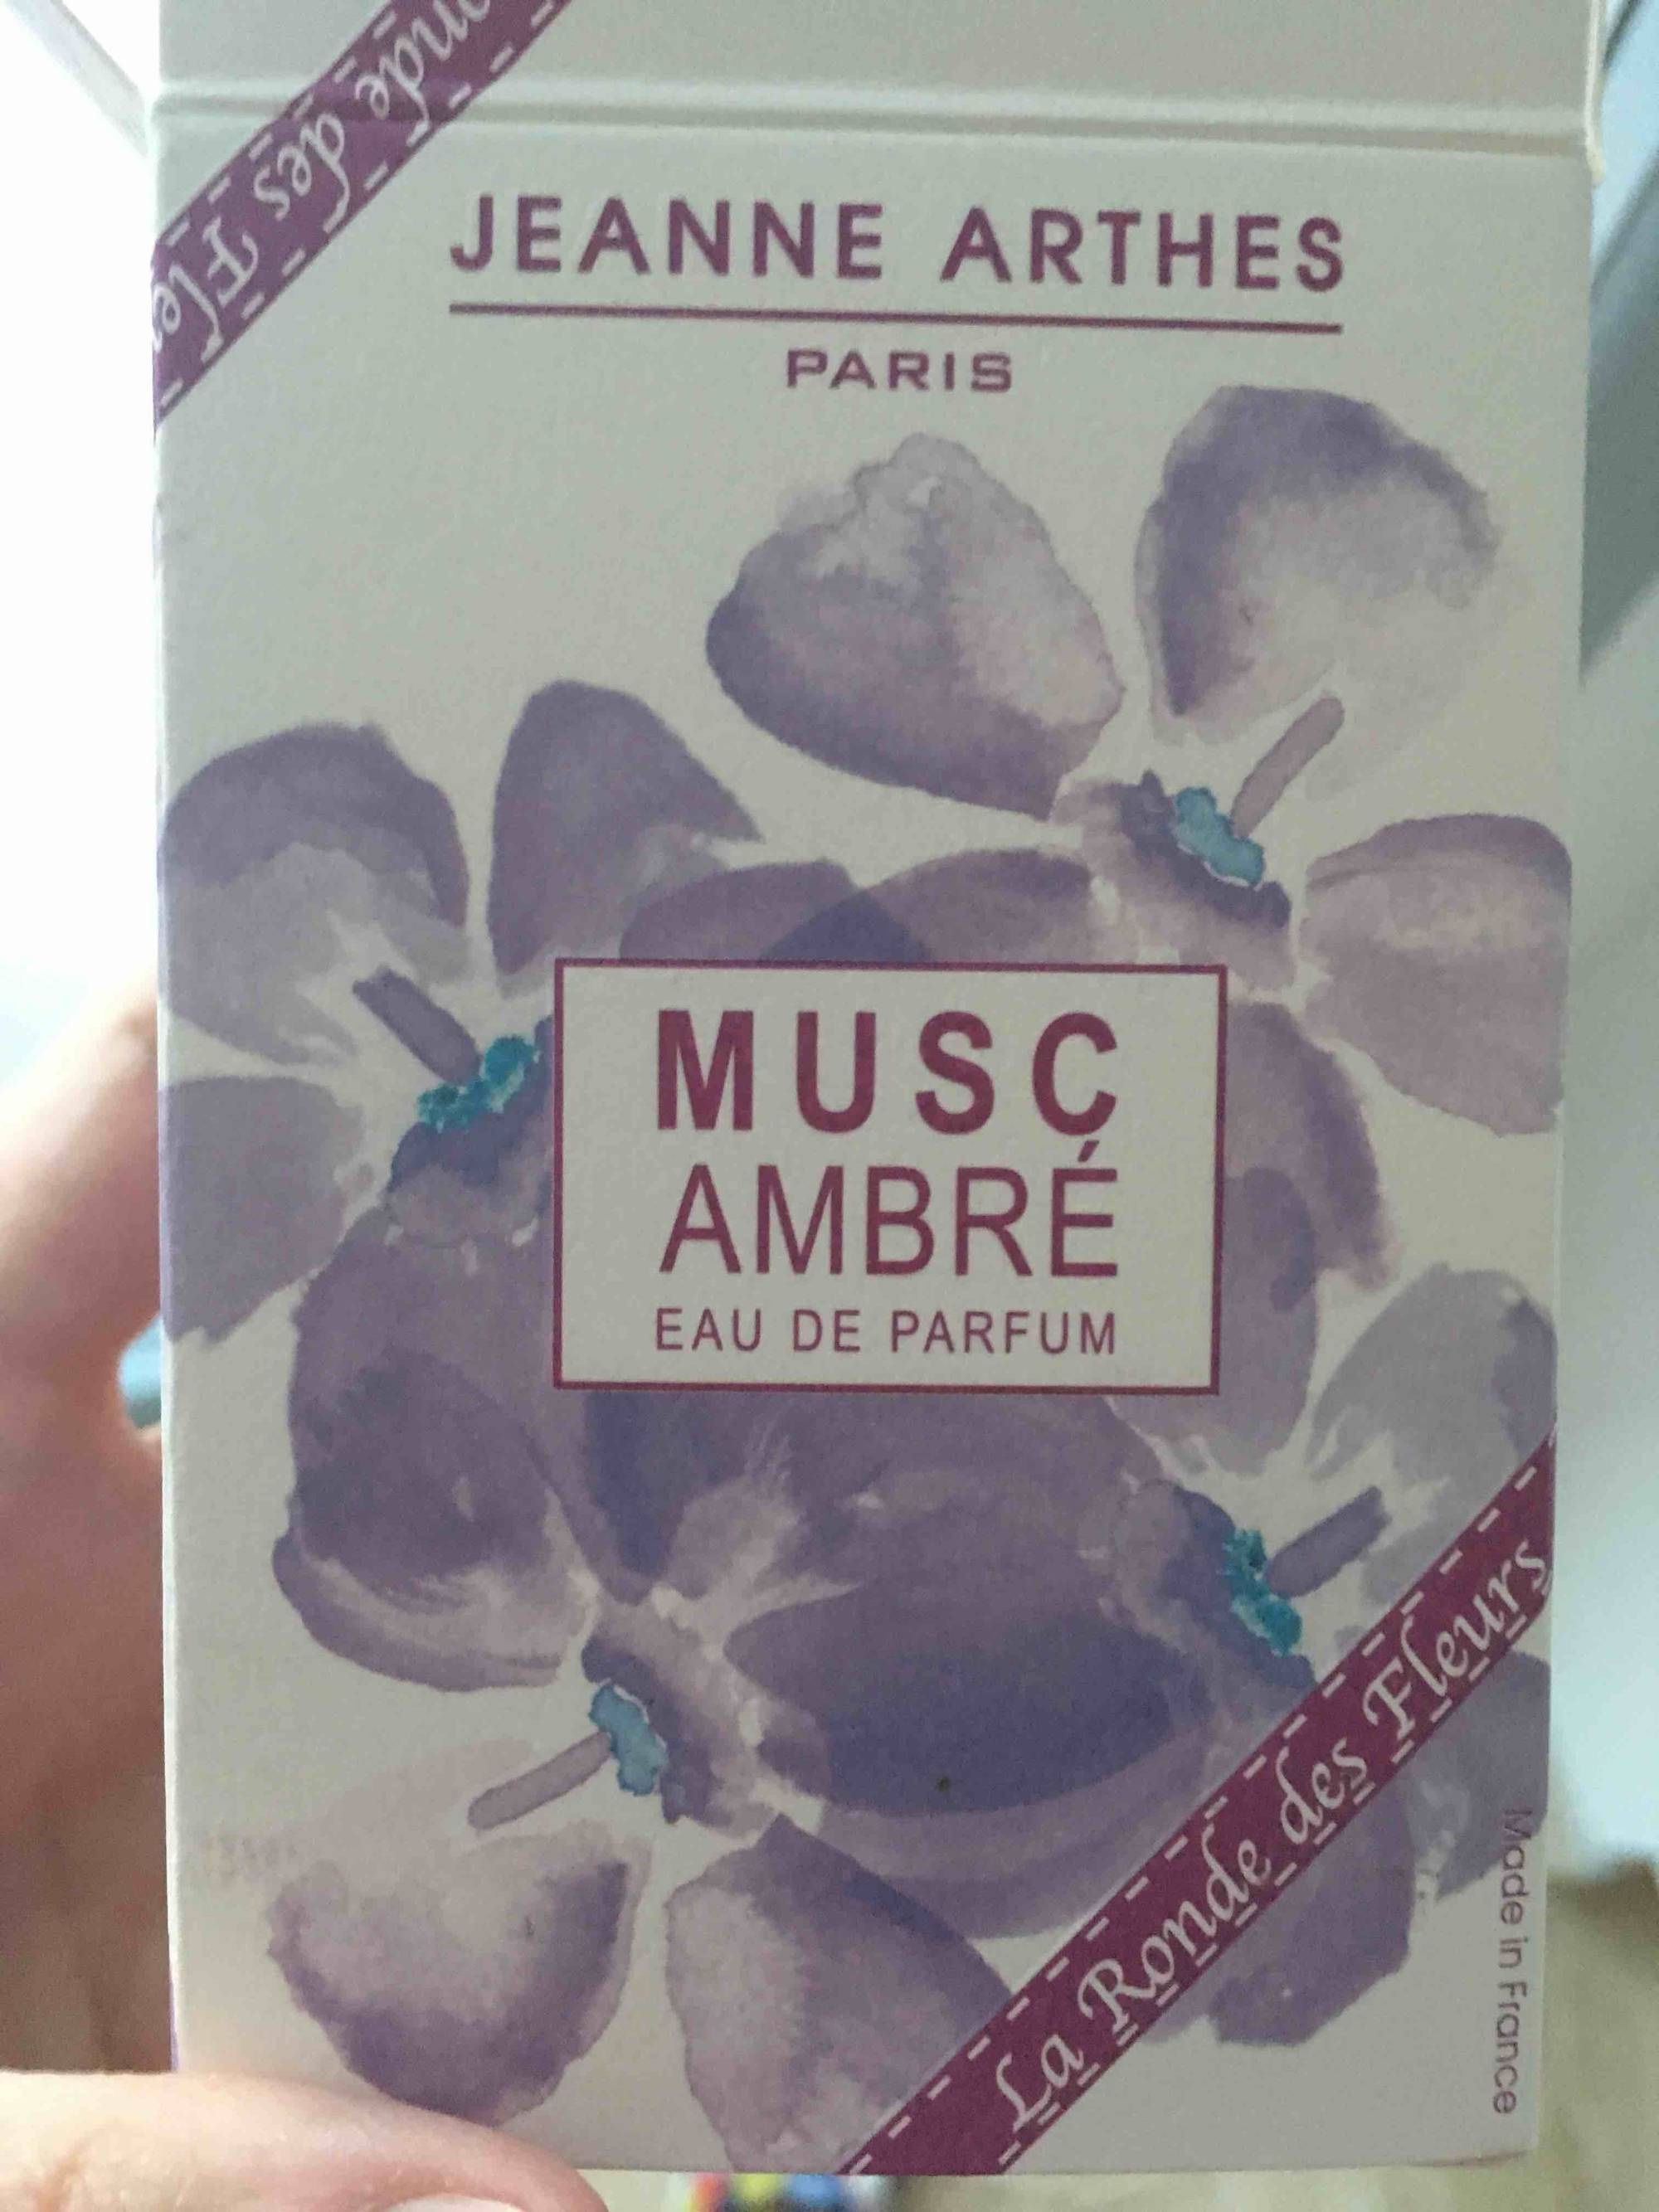 JEANNE ARTHES PARIS - Musc ambré - Eau de parfum la ronde des fleurs